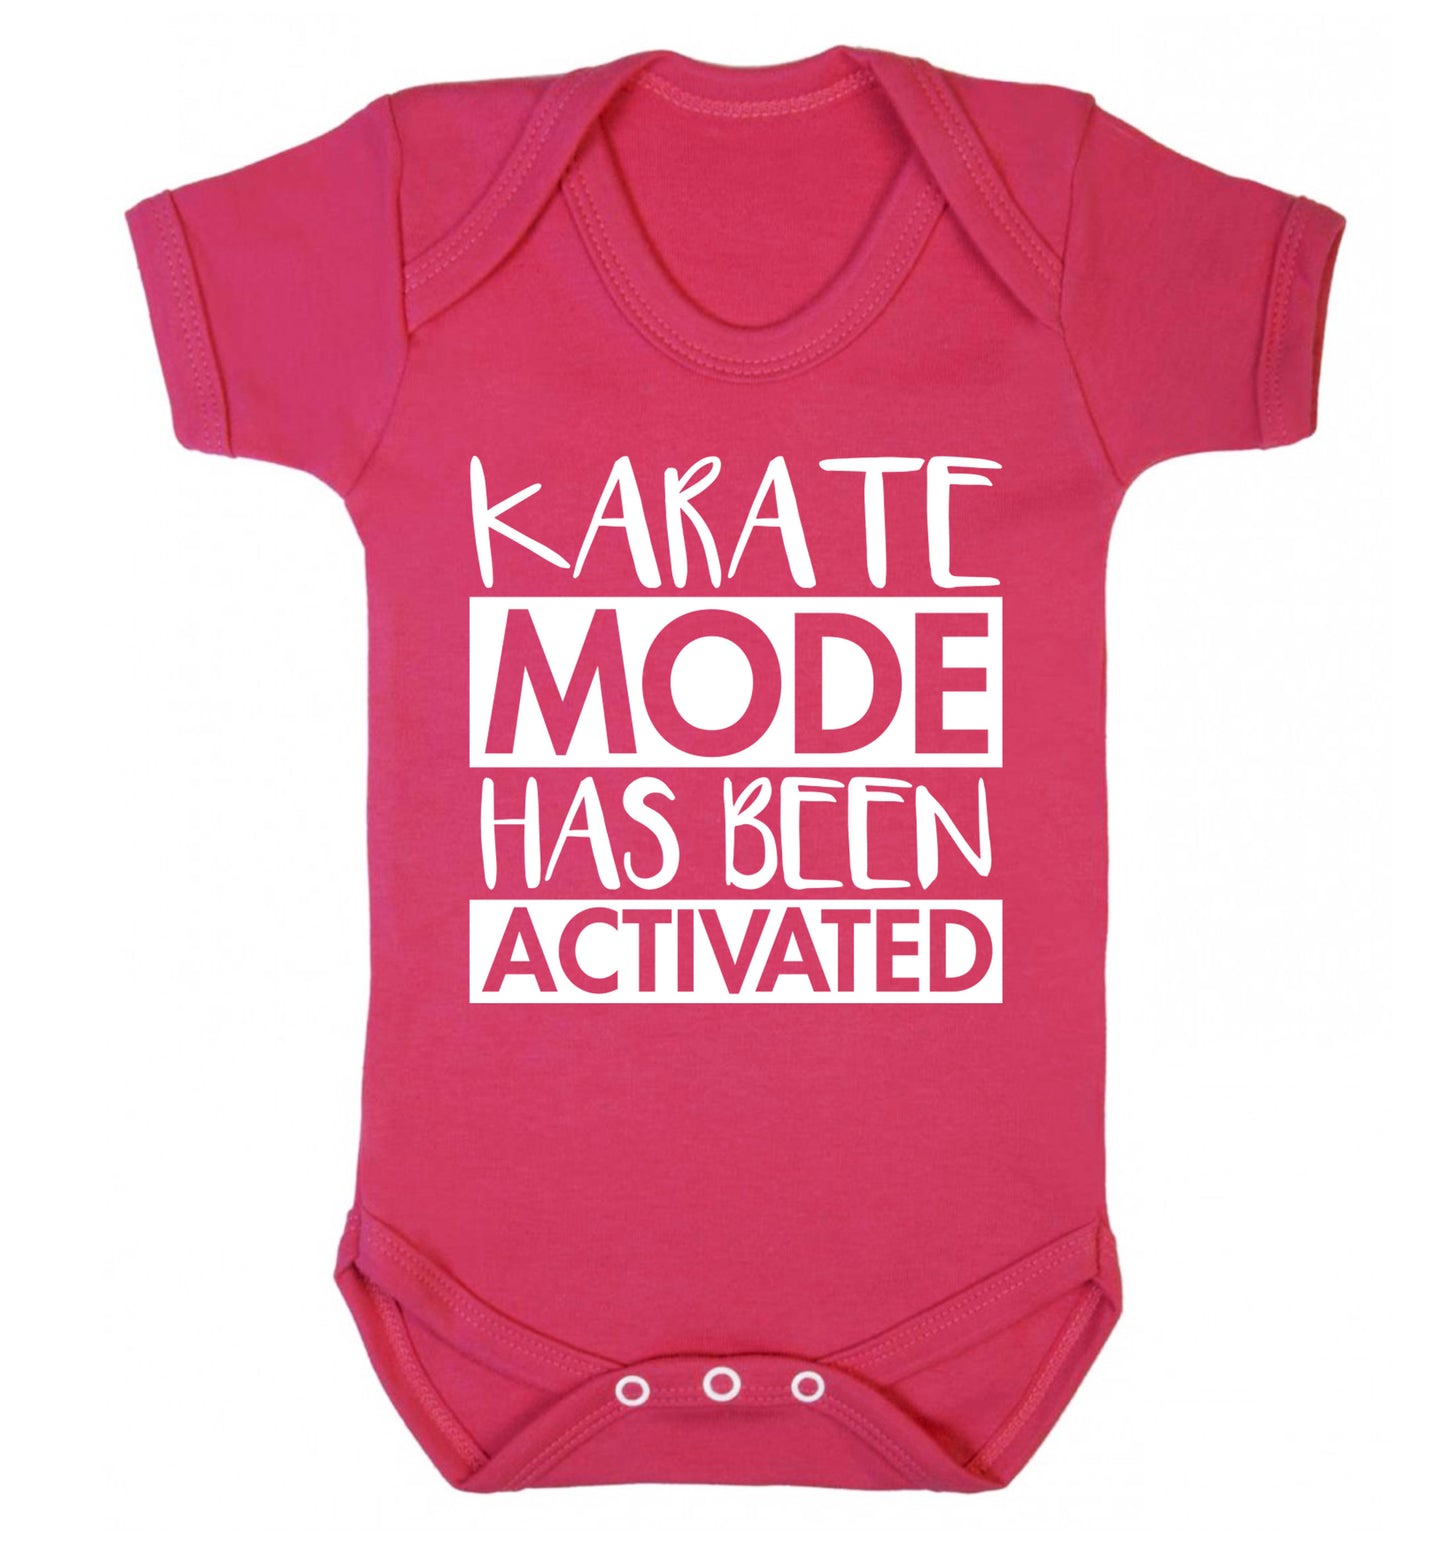 Karate mode activated Baby Vest dark pink 18-24 months